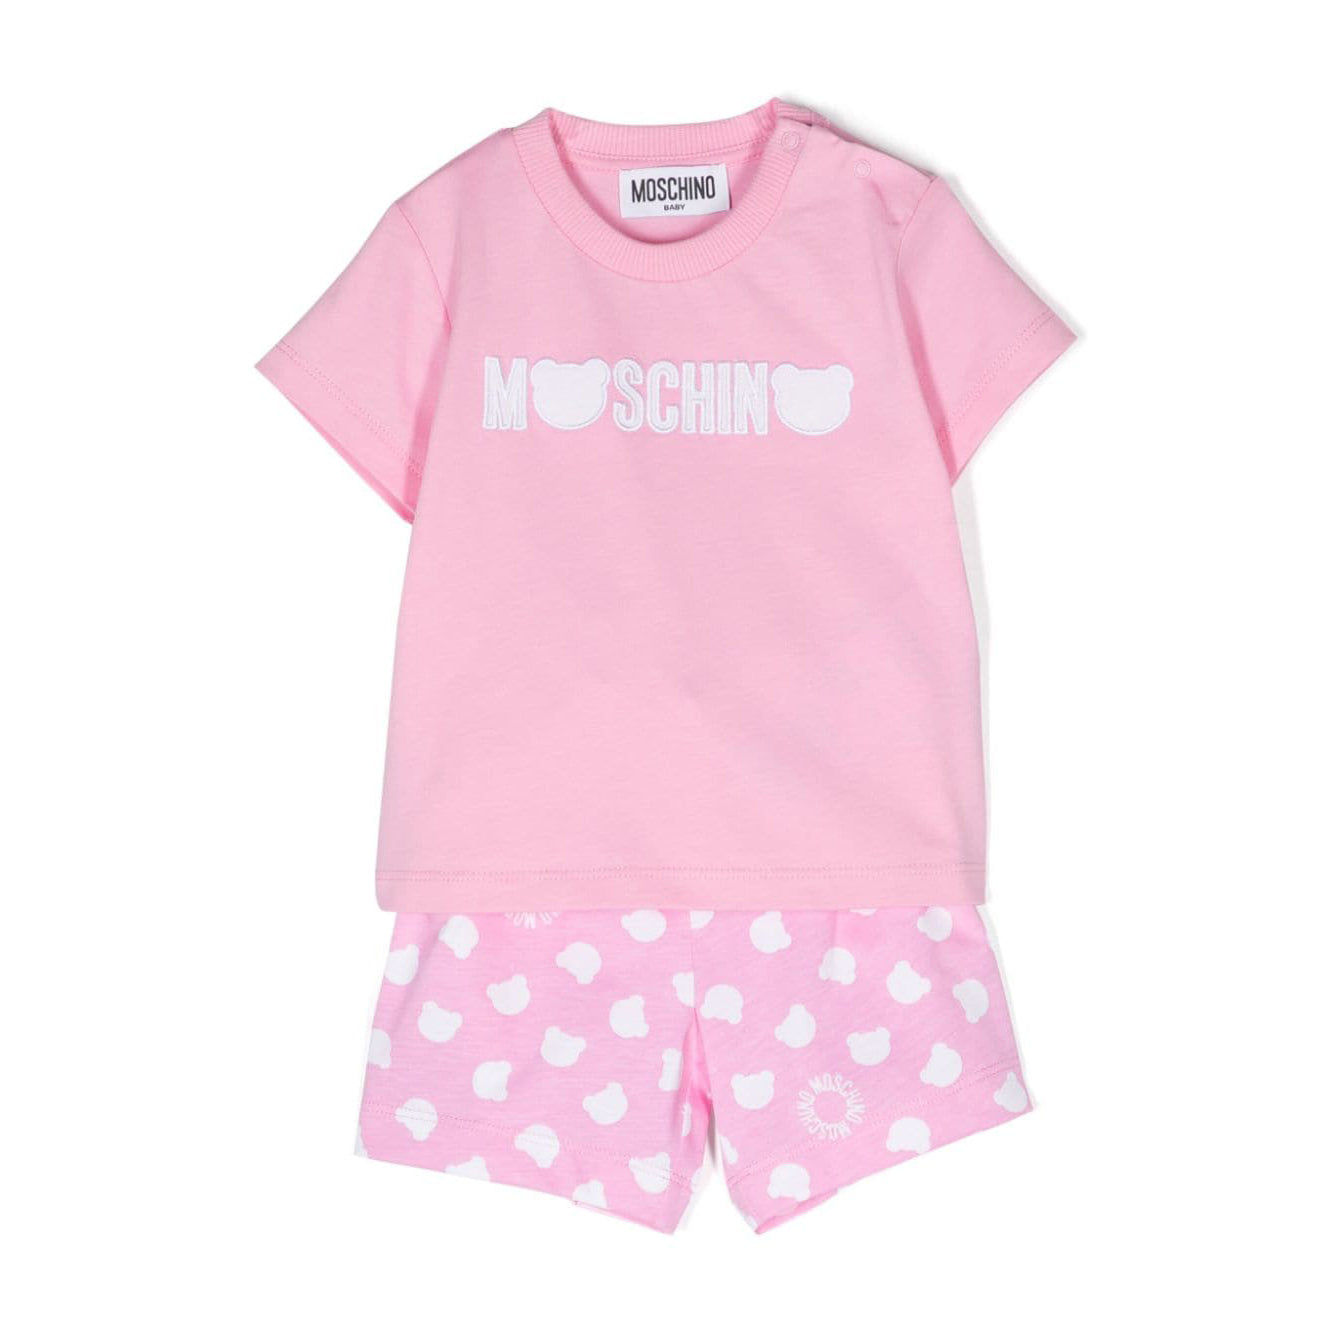 Baby Boys & Girls Pink Cotton Set